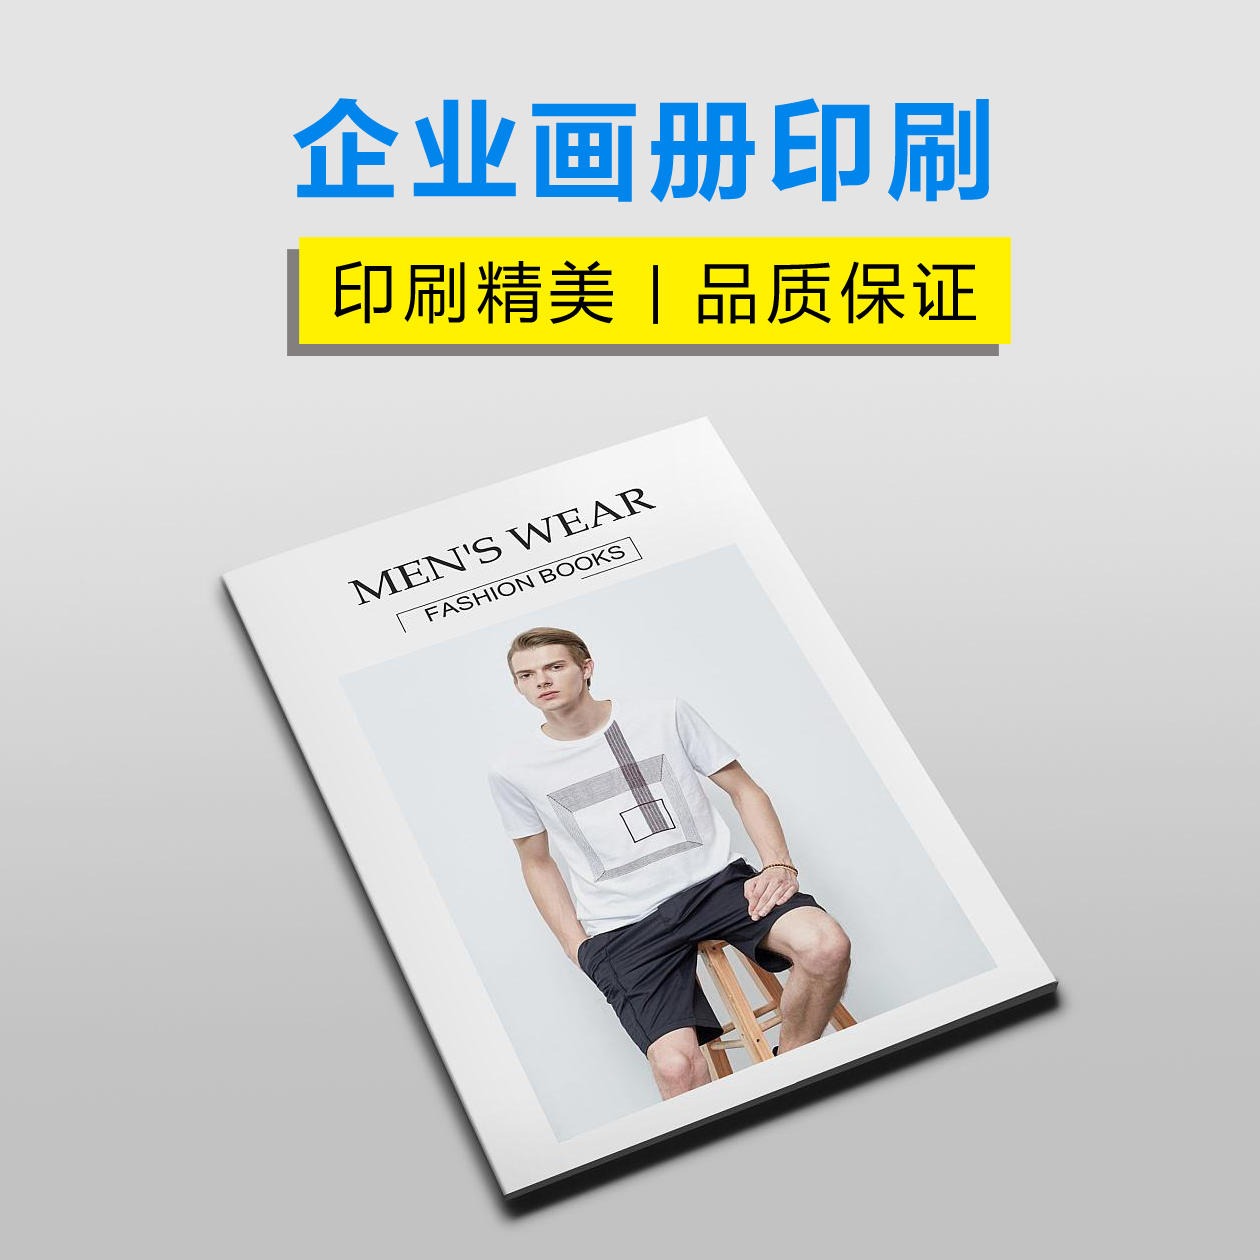 上海三煜印刷画册 男装女装图册 A4打印  春季服装宣传册印刷